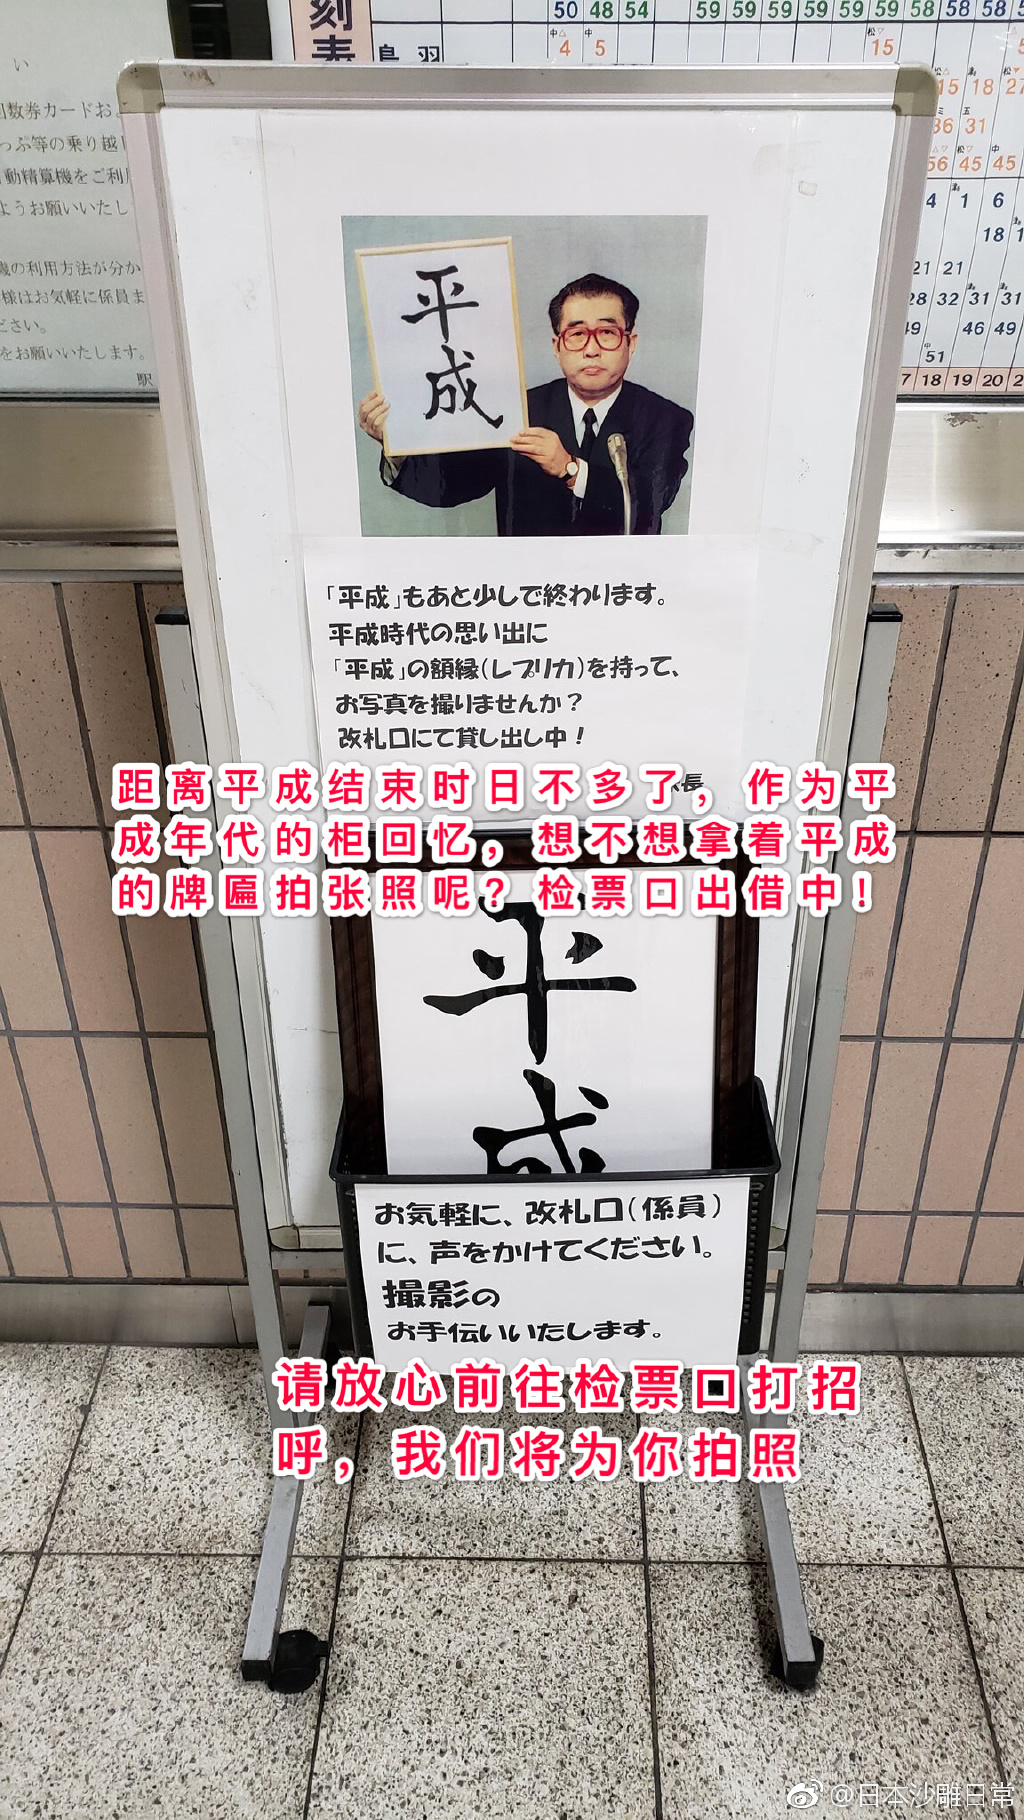 近铁名古屋线的弥富车站开展了一项莫名其妙的便民服务